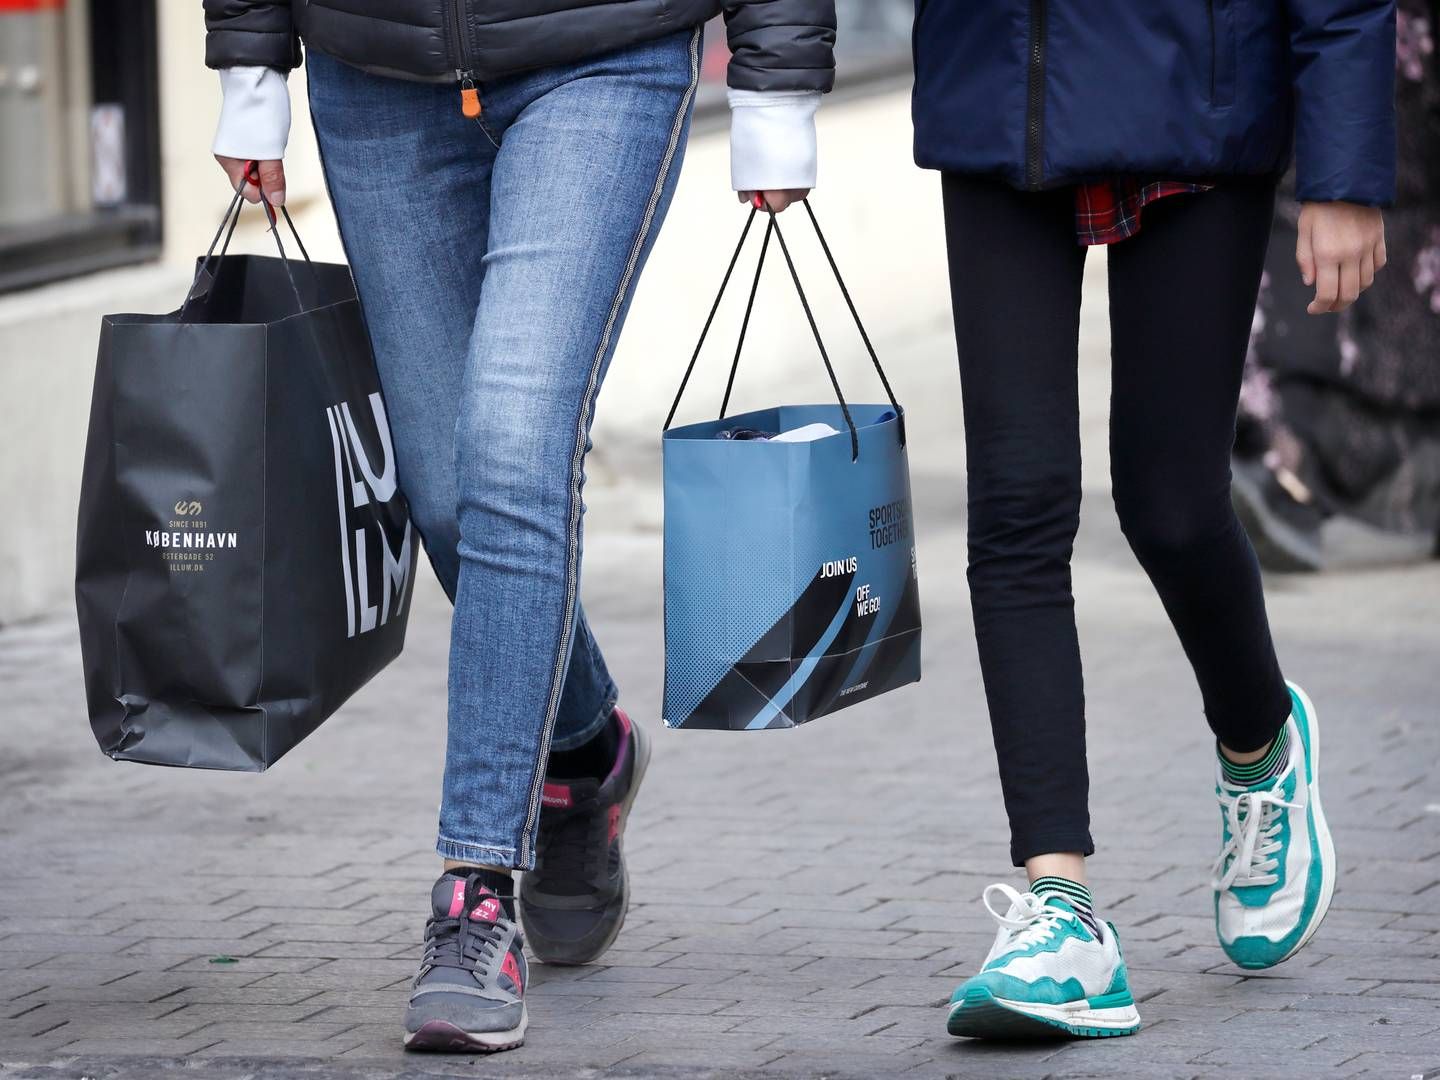 Forbrugertilliden steg en smule i marts, men er stadig langt fra at være i plus. | Foto: Jens Dresling